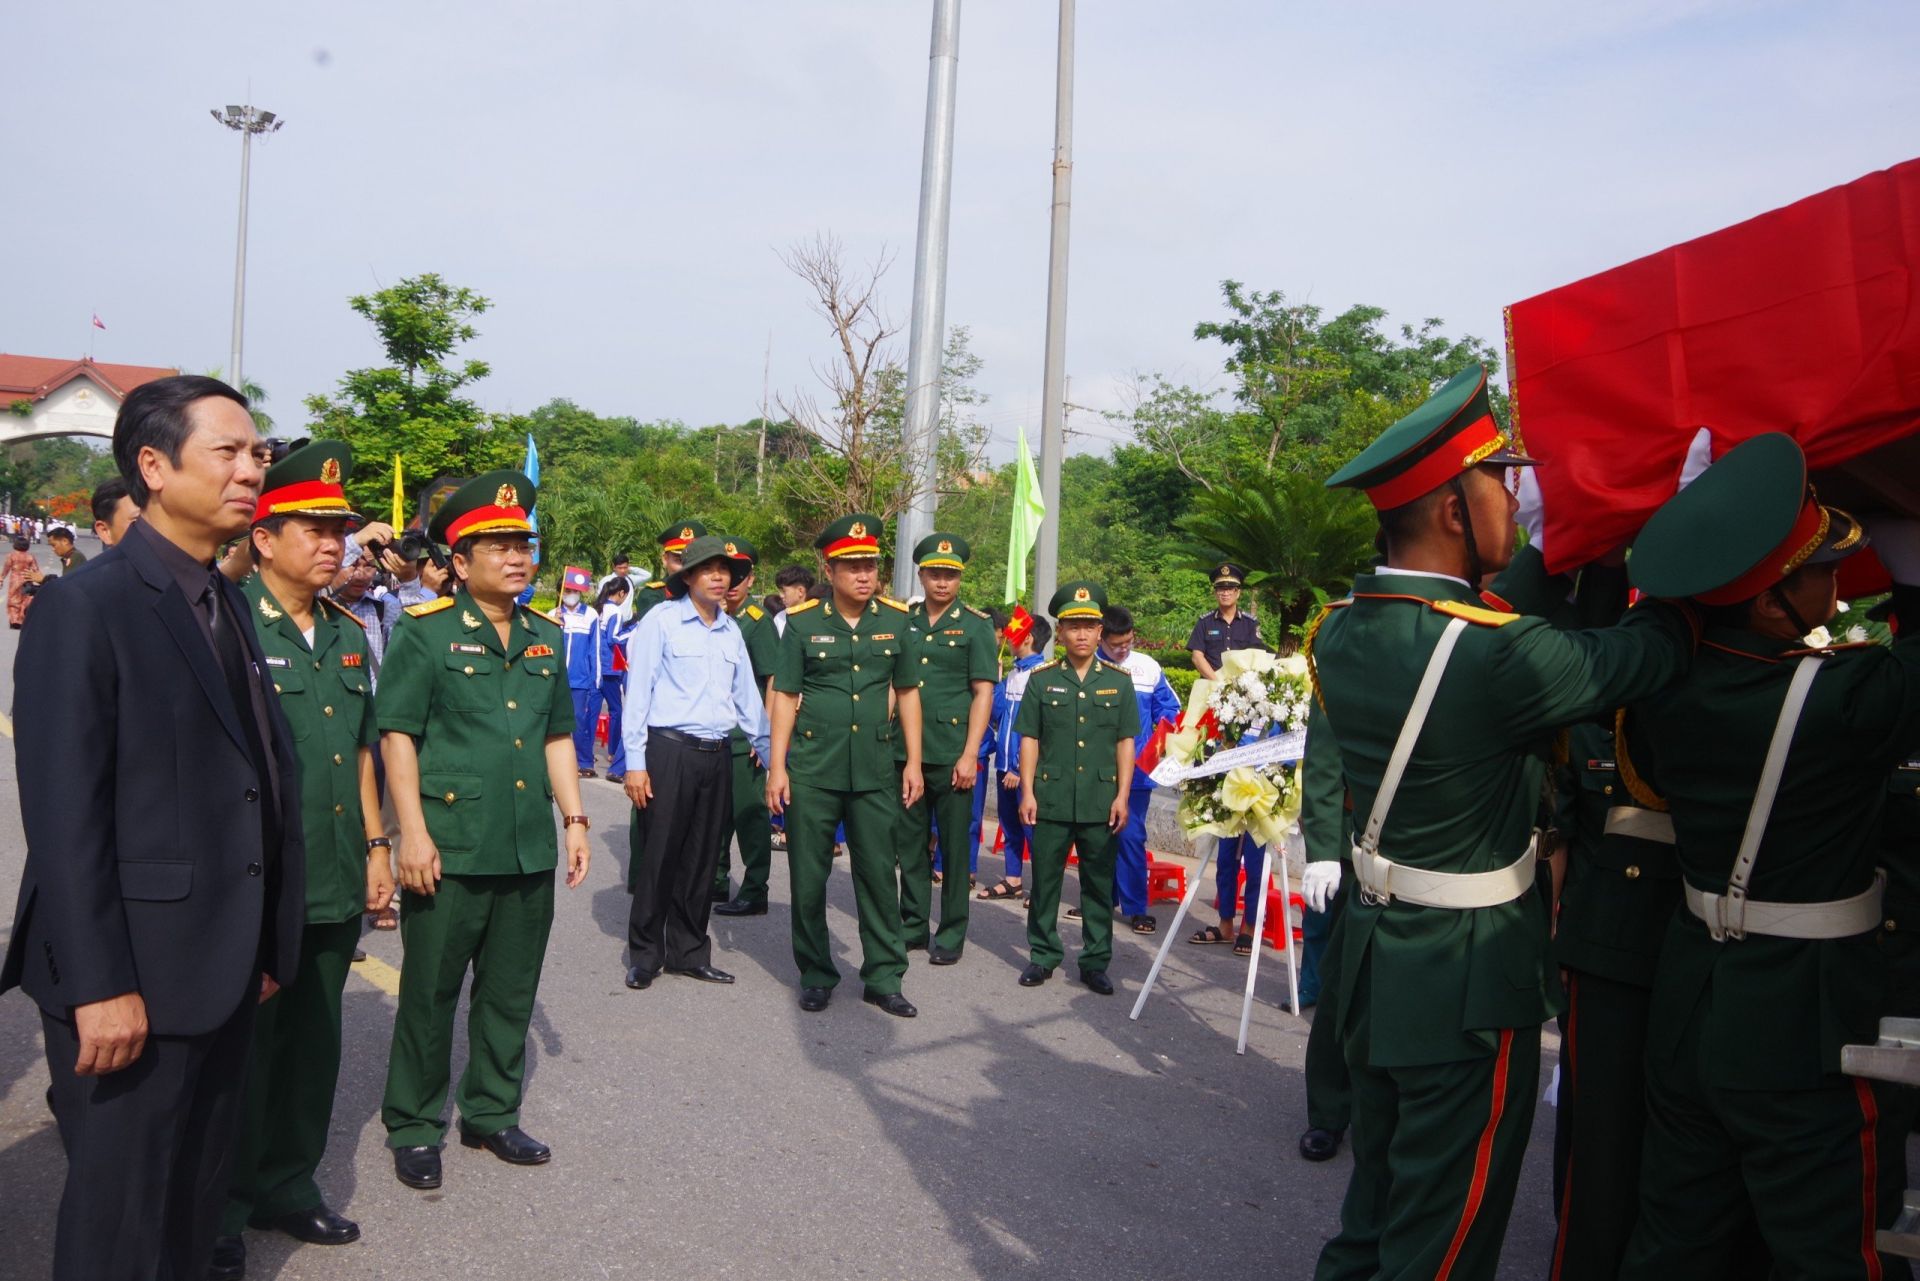 Lễ bàn giao và đón nhận hài cốt liệt sĩ quân tình nguyện và chuyên gia Việt Nam hi sinh tại Lào mùa khô 2023-2024 được tổ chức trang nghiêm, trọng thể